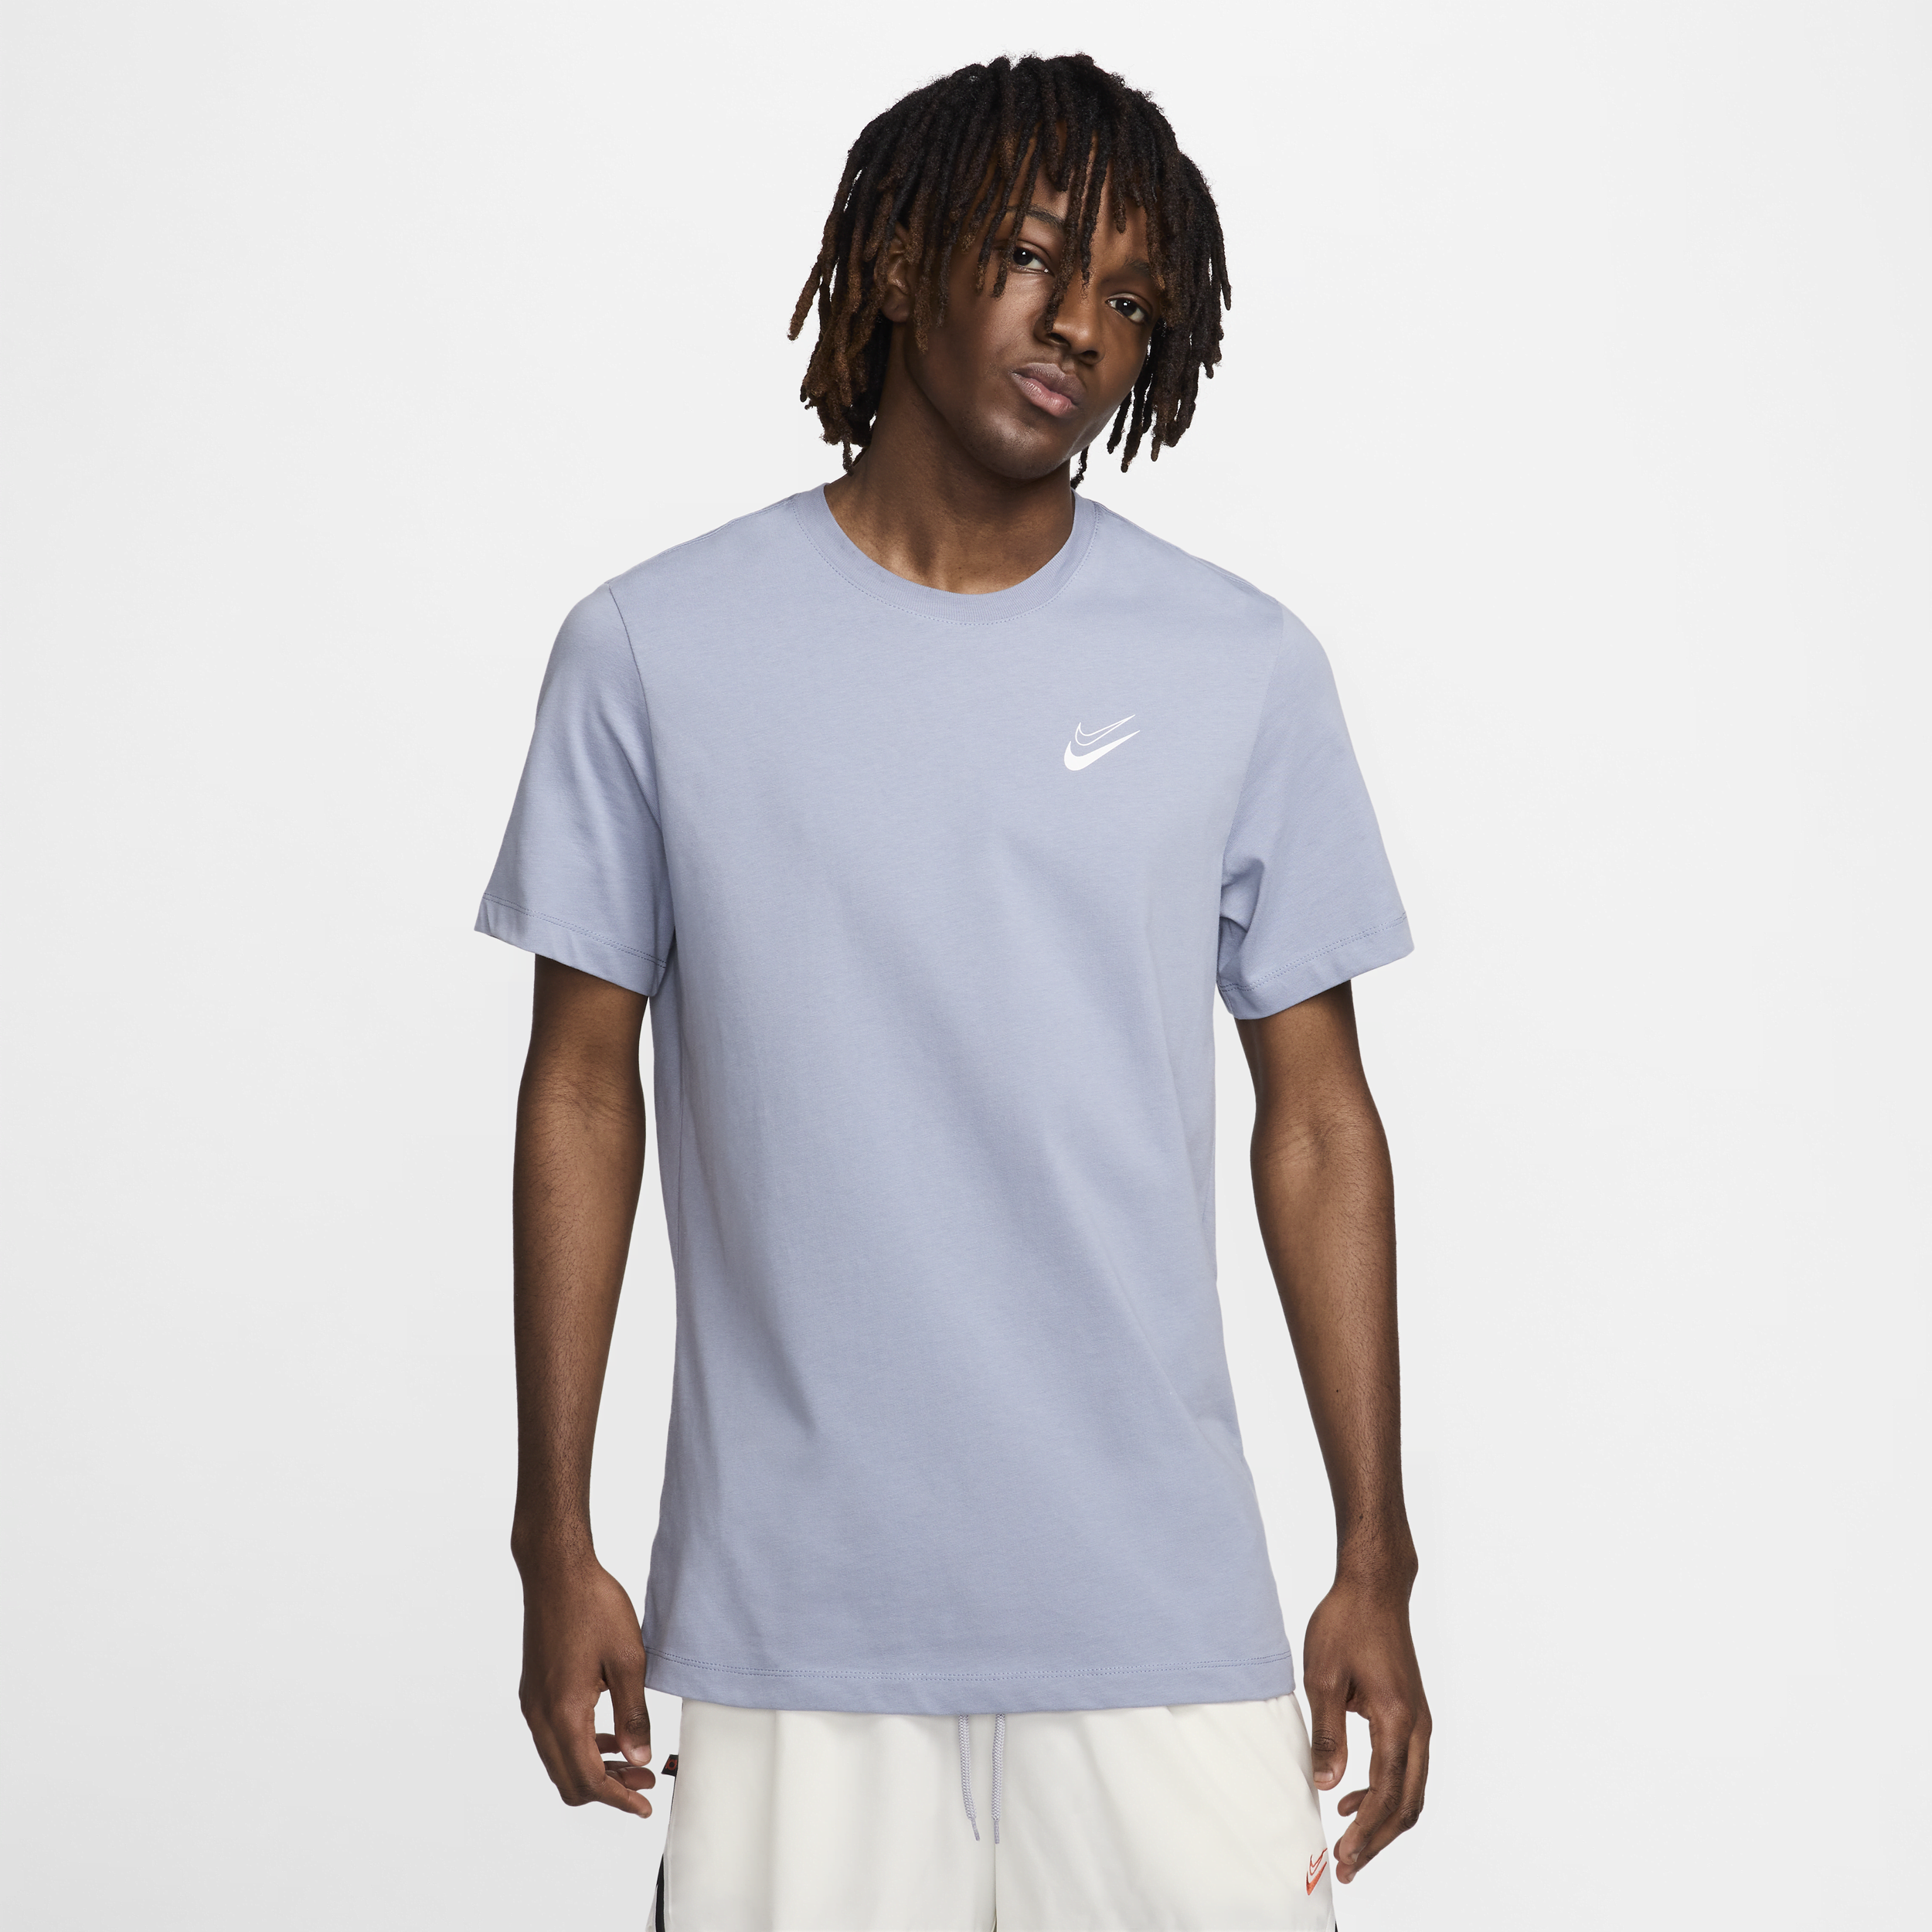 Nike Kevin Durant basketbalshirt voor heren - Blauw